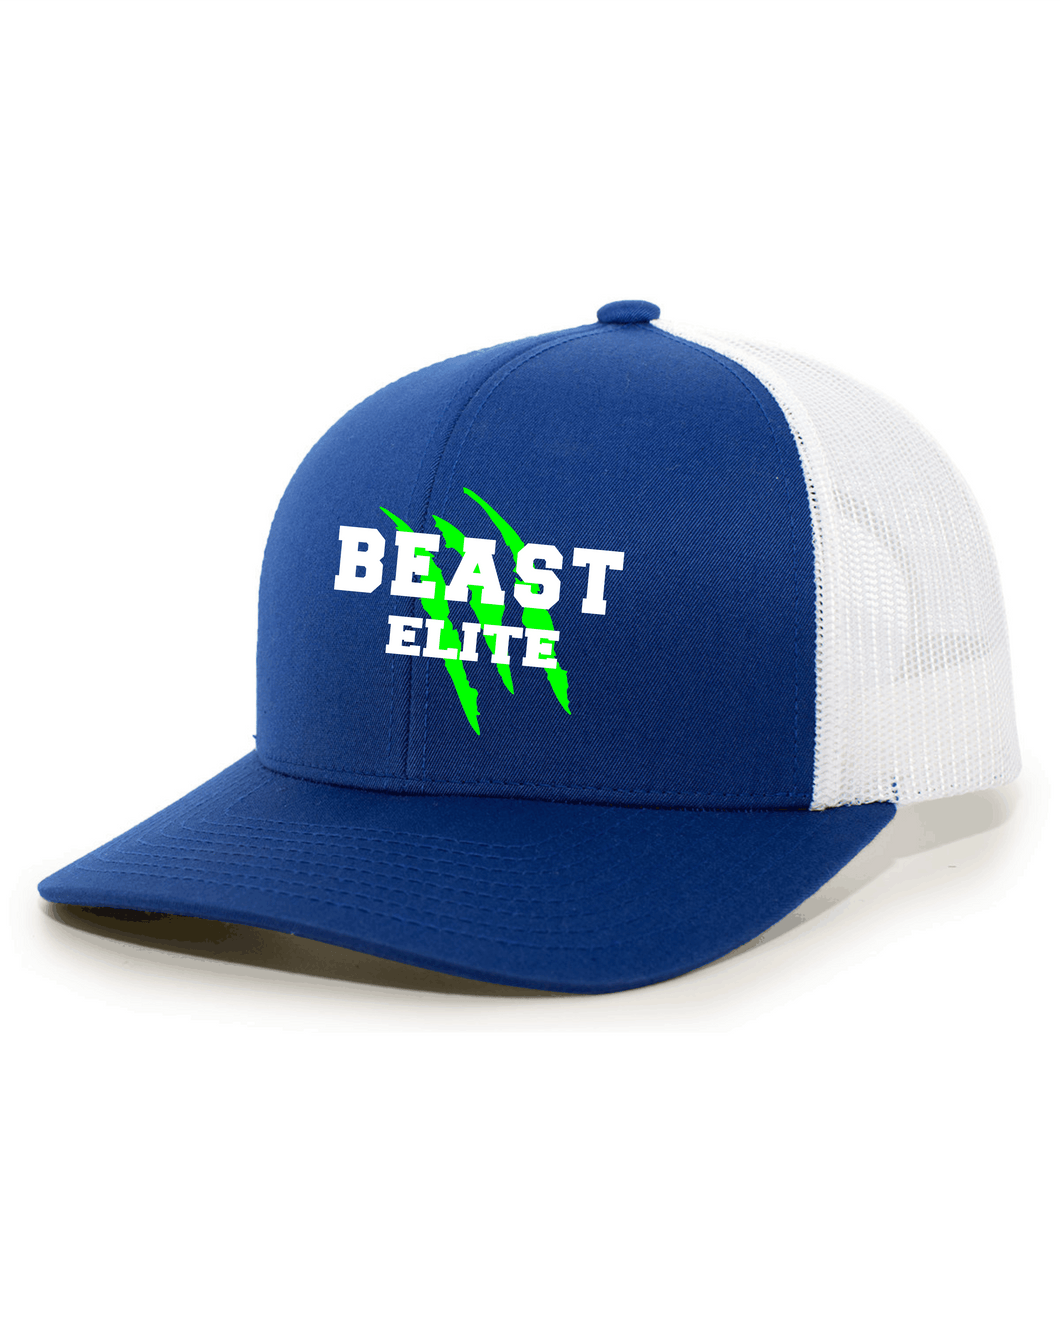 BEAST-LAX-903-1 - Pacific Trucker Snapback Hat - BEAST Elite LAX Logo